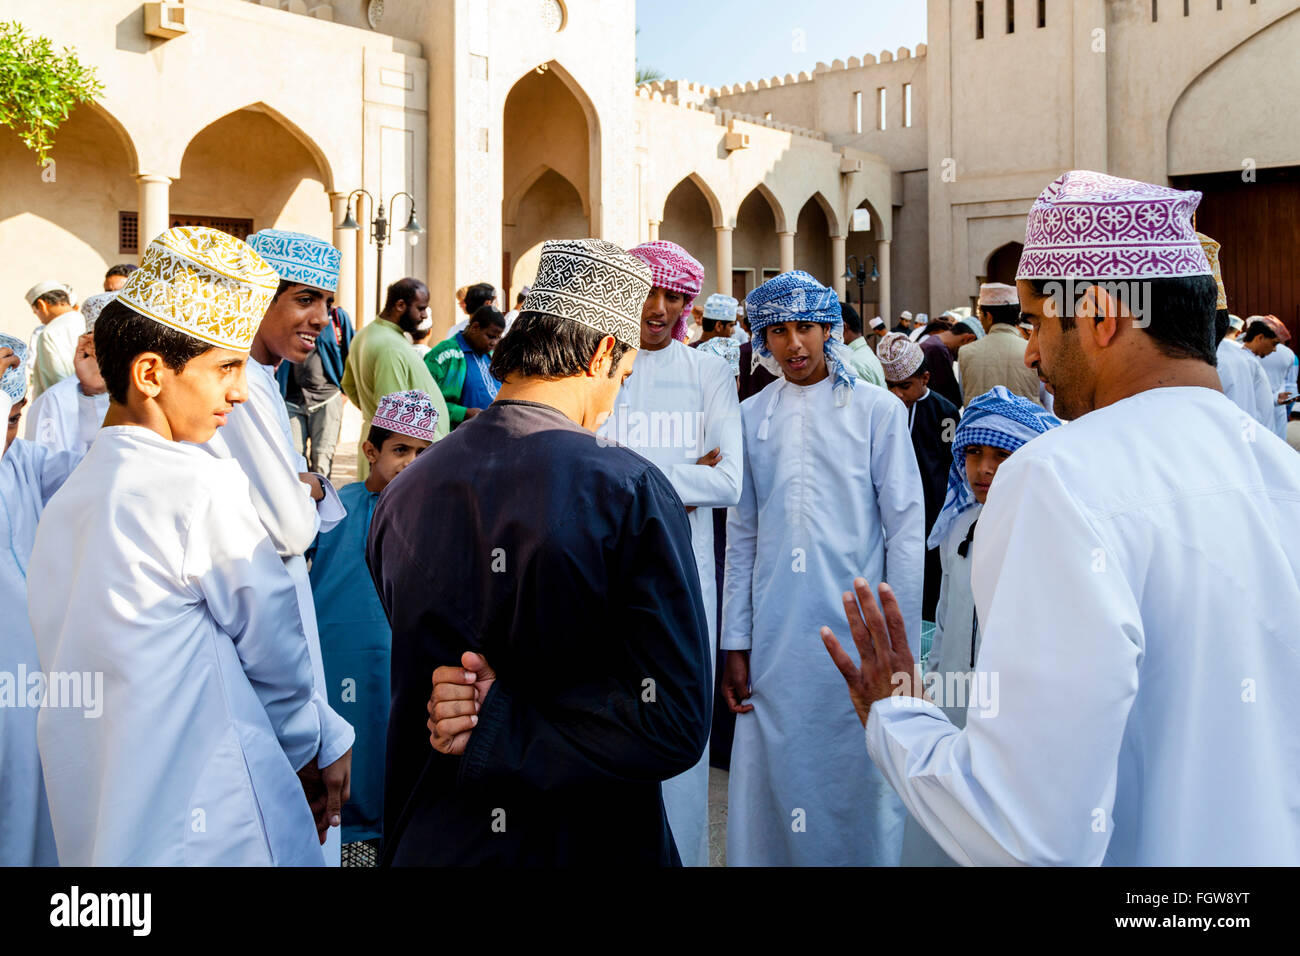 Un grupo de hombres de Omán charlando durante el viernes, el Mercado de Pájaros Ad Dakhiliyah Nizwa, Región, Omán Foto de stock